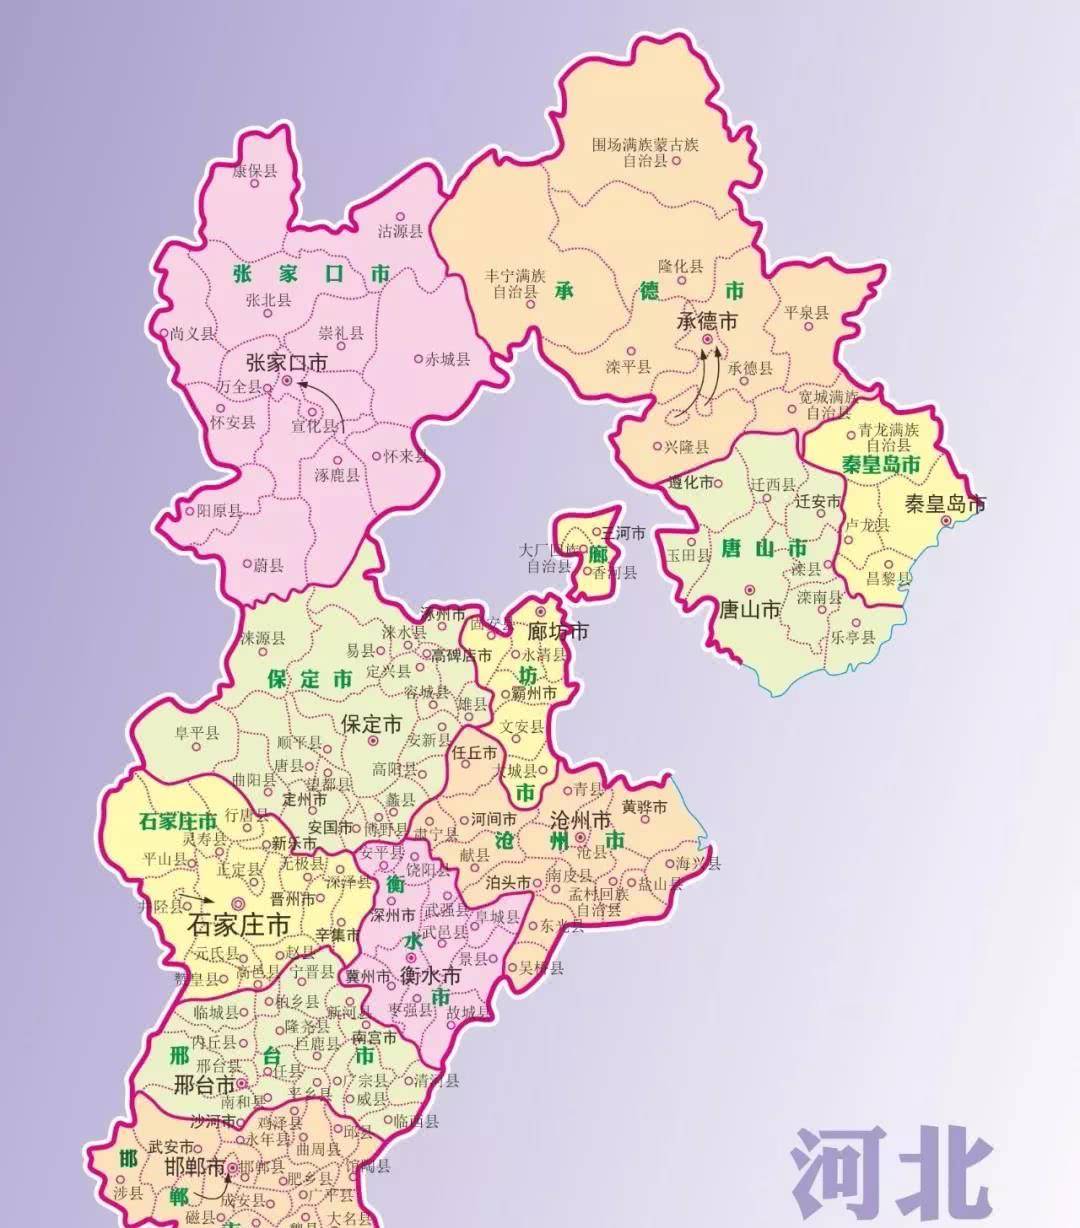 现在,河北省共辖十一地级市,数量并不多,但仔细看河北地图我们就会